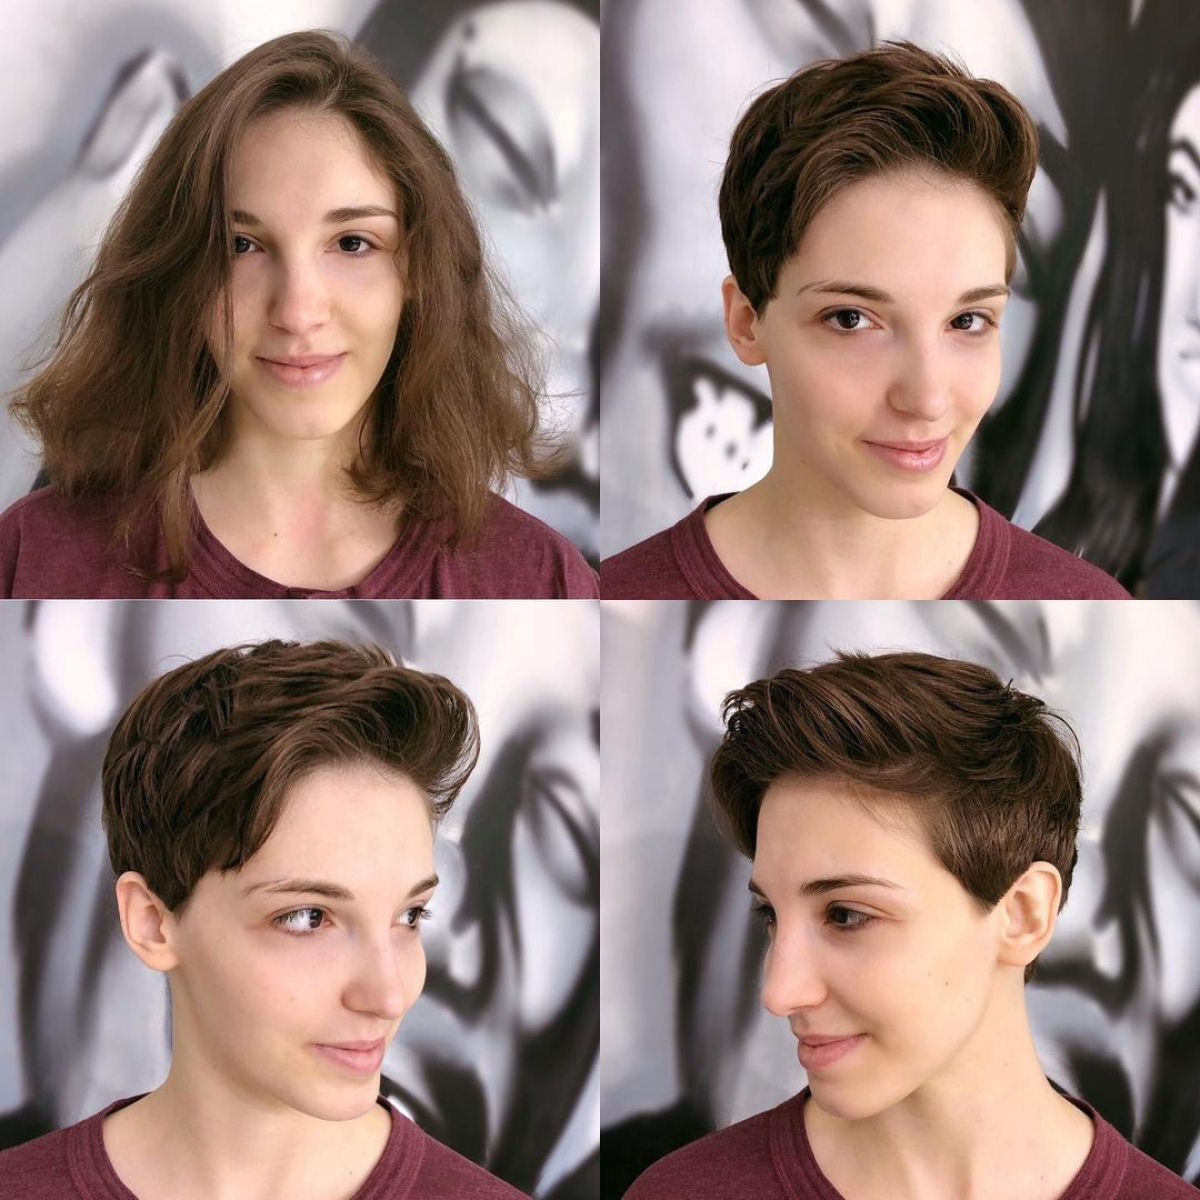 Cabeleireira moscovita demonstra que a beleza não se mede pelo comprimento do cabelo 08